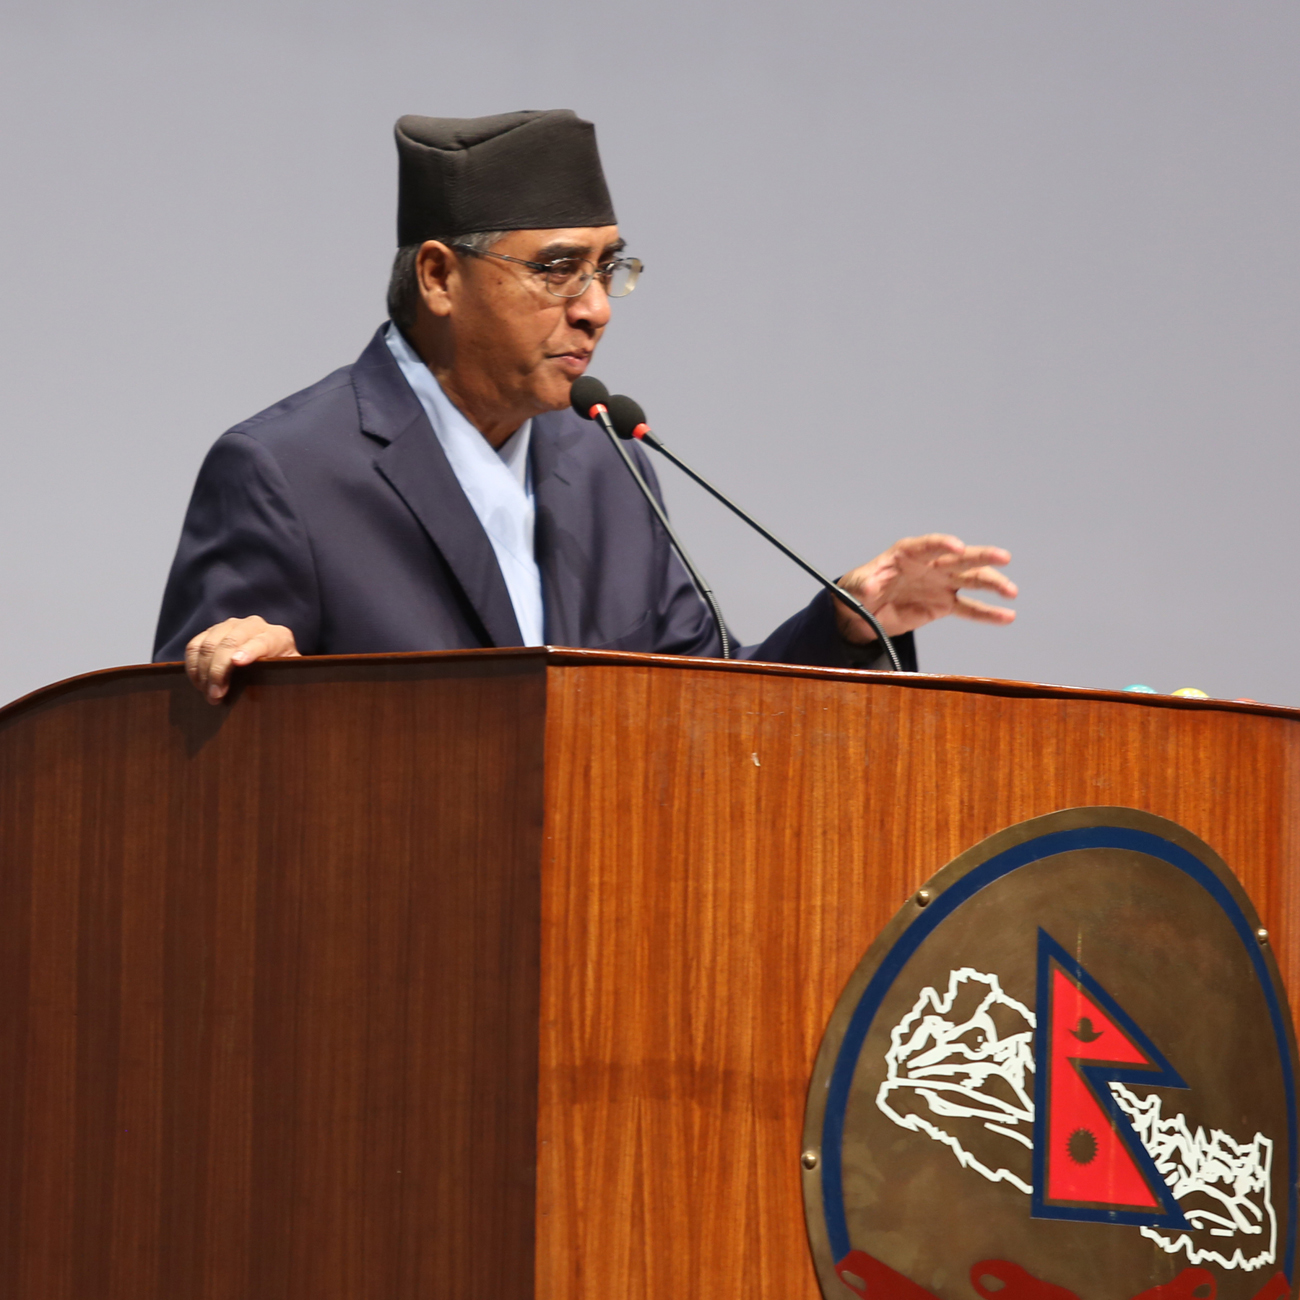 नेपाली जनता लोकतान्त्रिक गठबन्धनका पक्षमाः सभापति देउवा